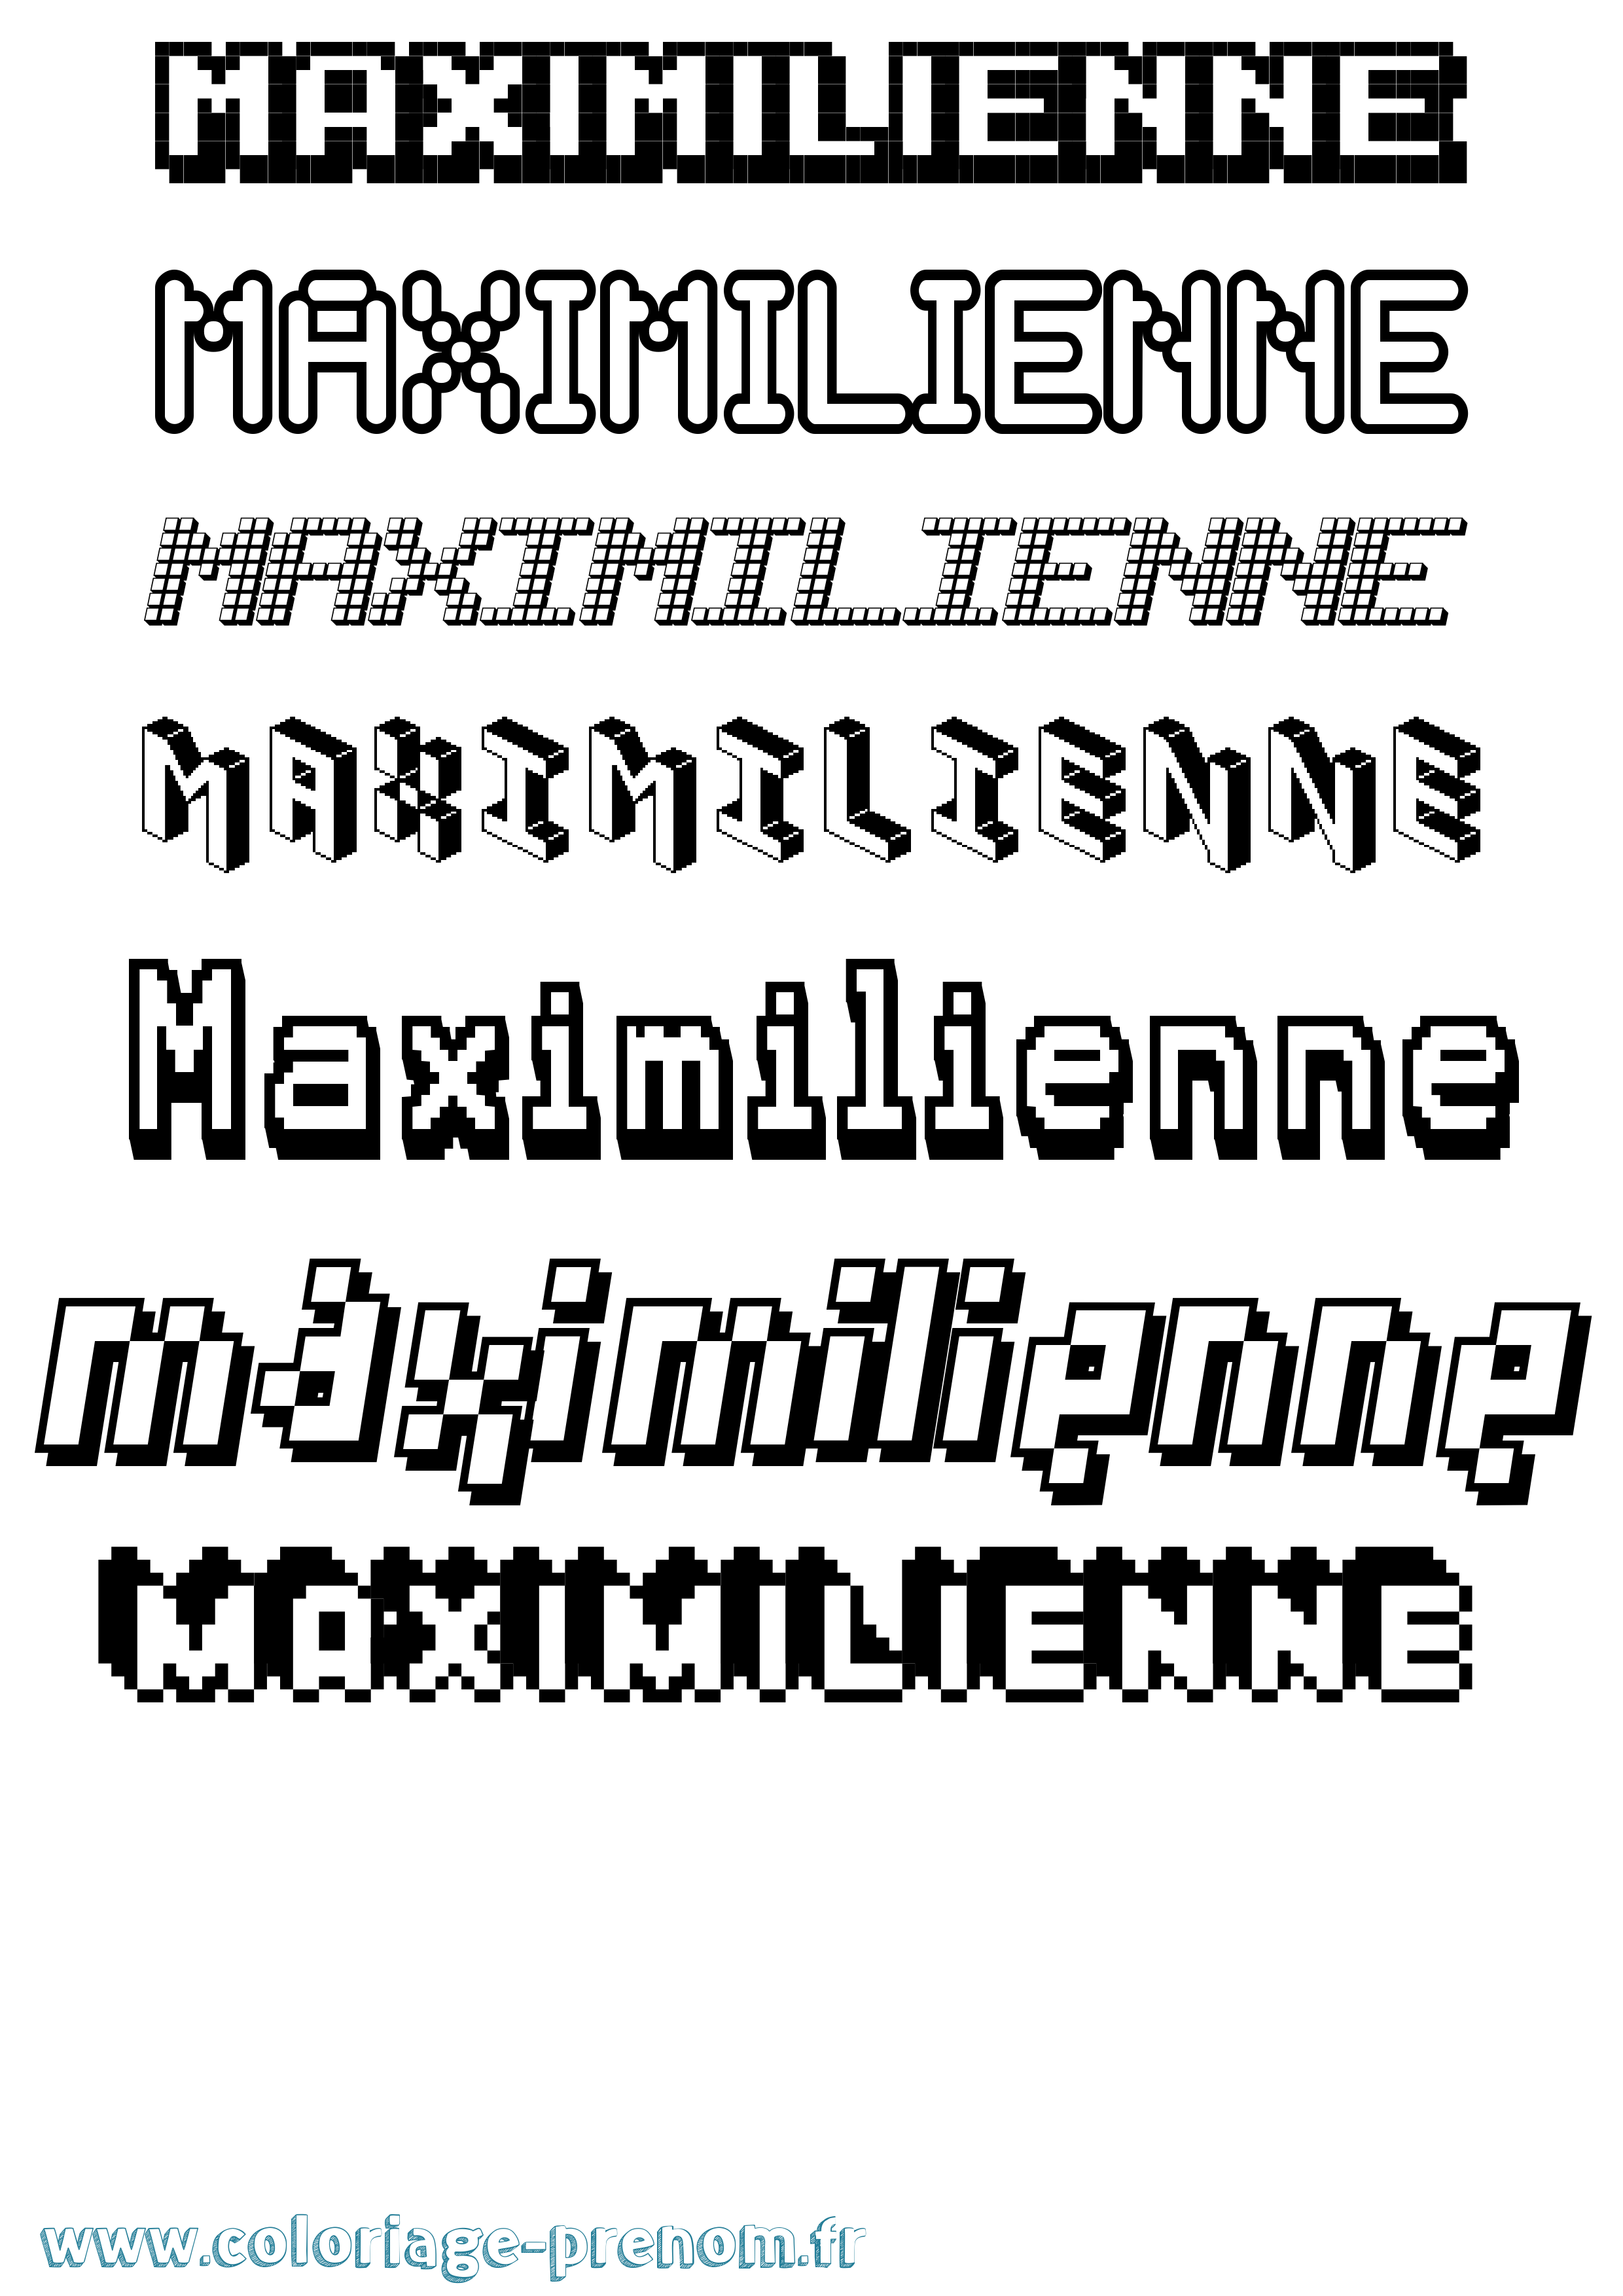 Coloriage prénom Maximilienne Pixel